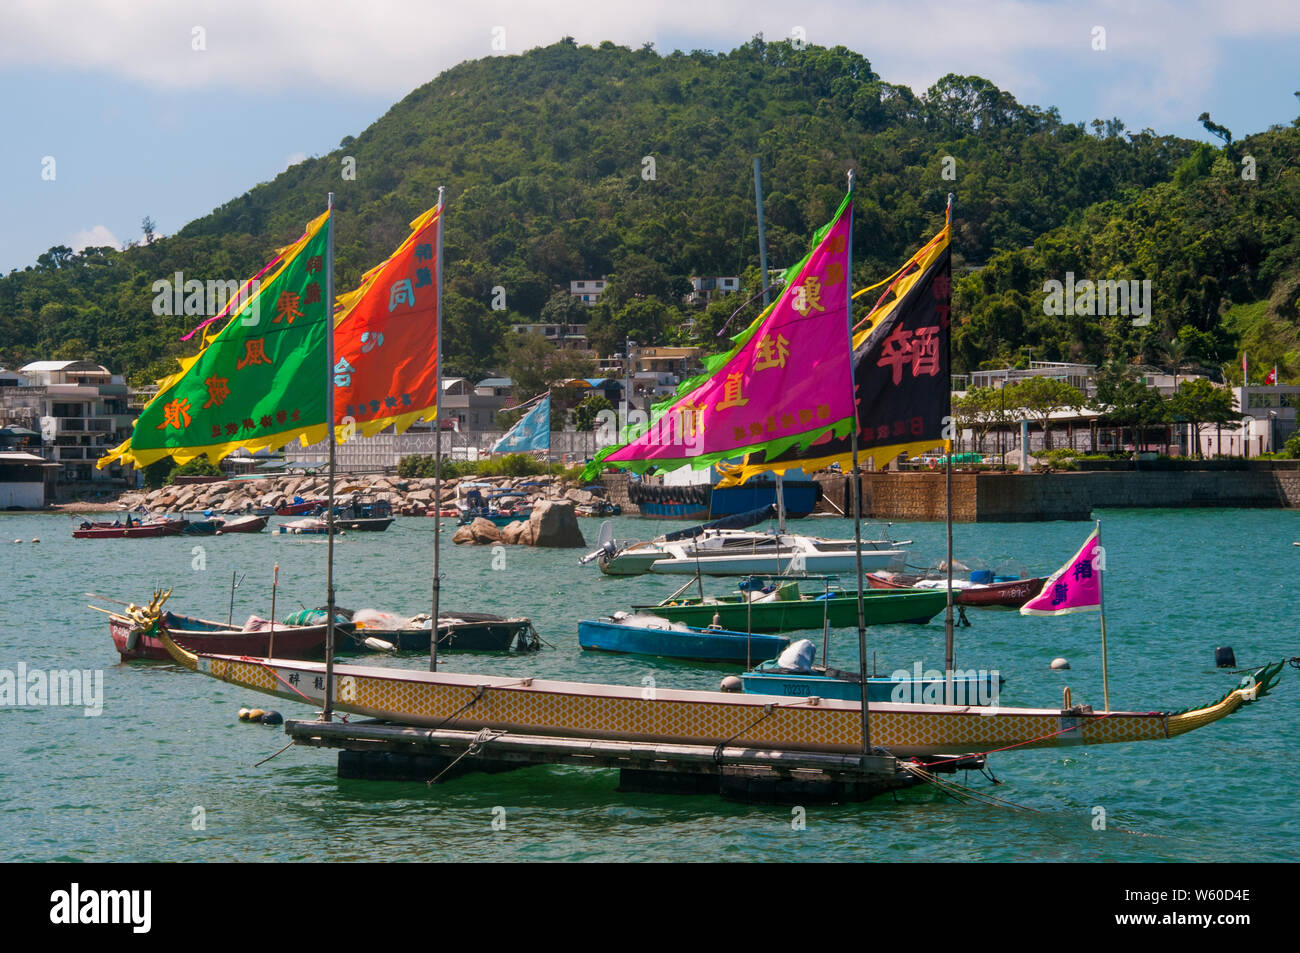 Dragon boats moored at Yung Shue Wan on Lamma Island, Hong Kong Stock Photo